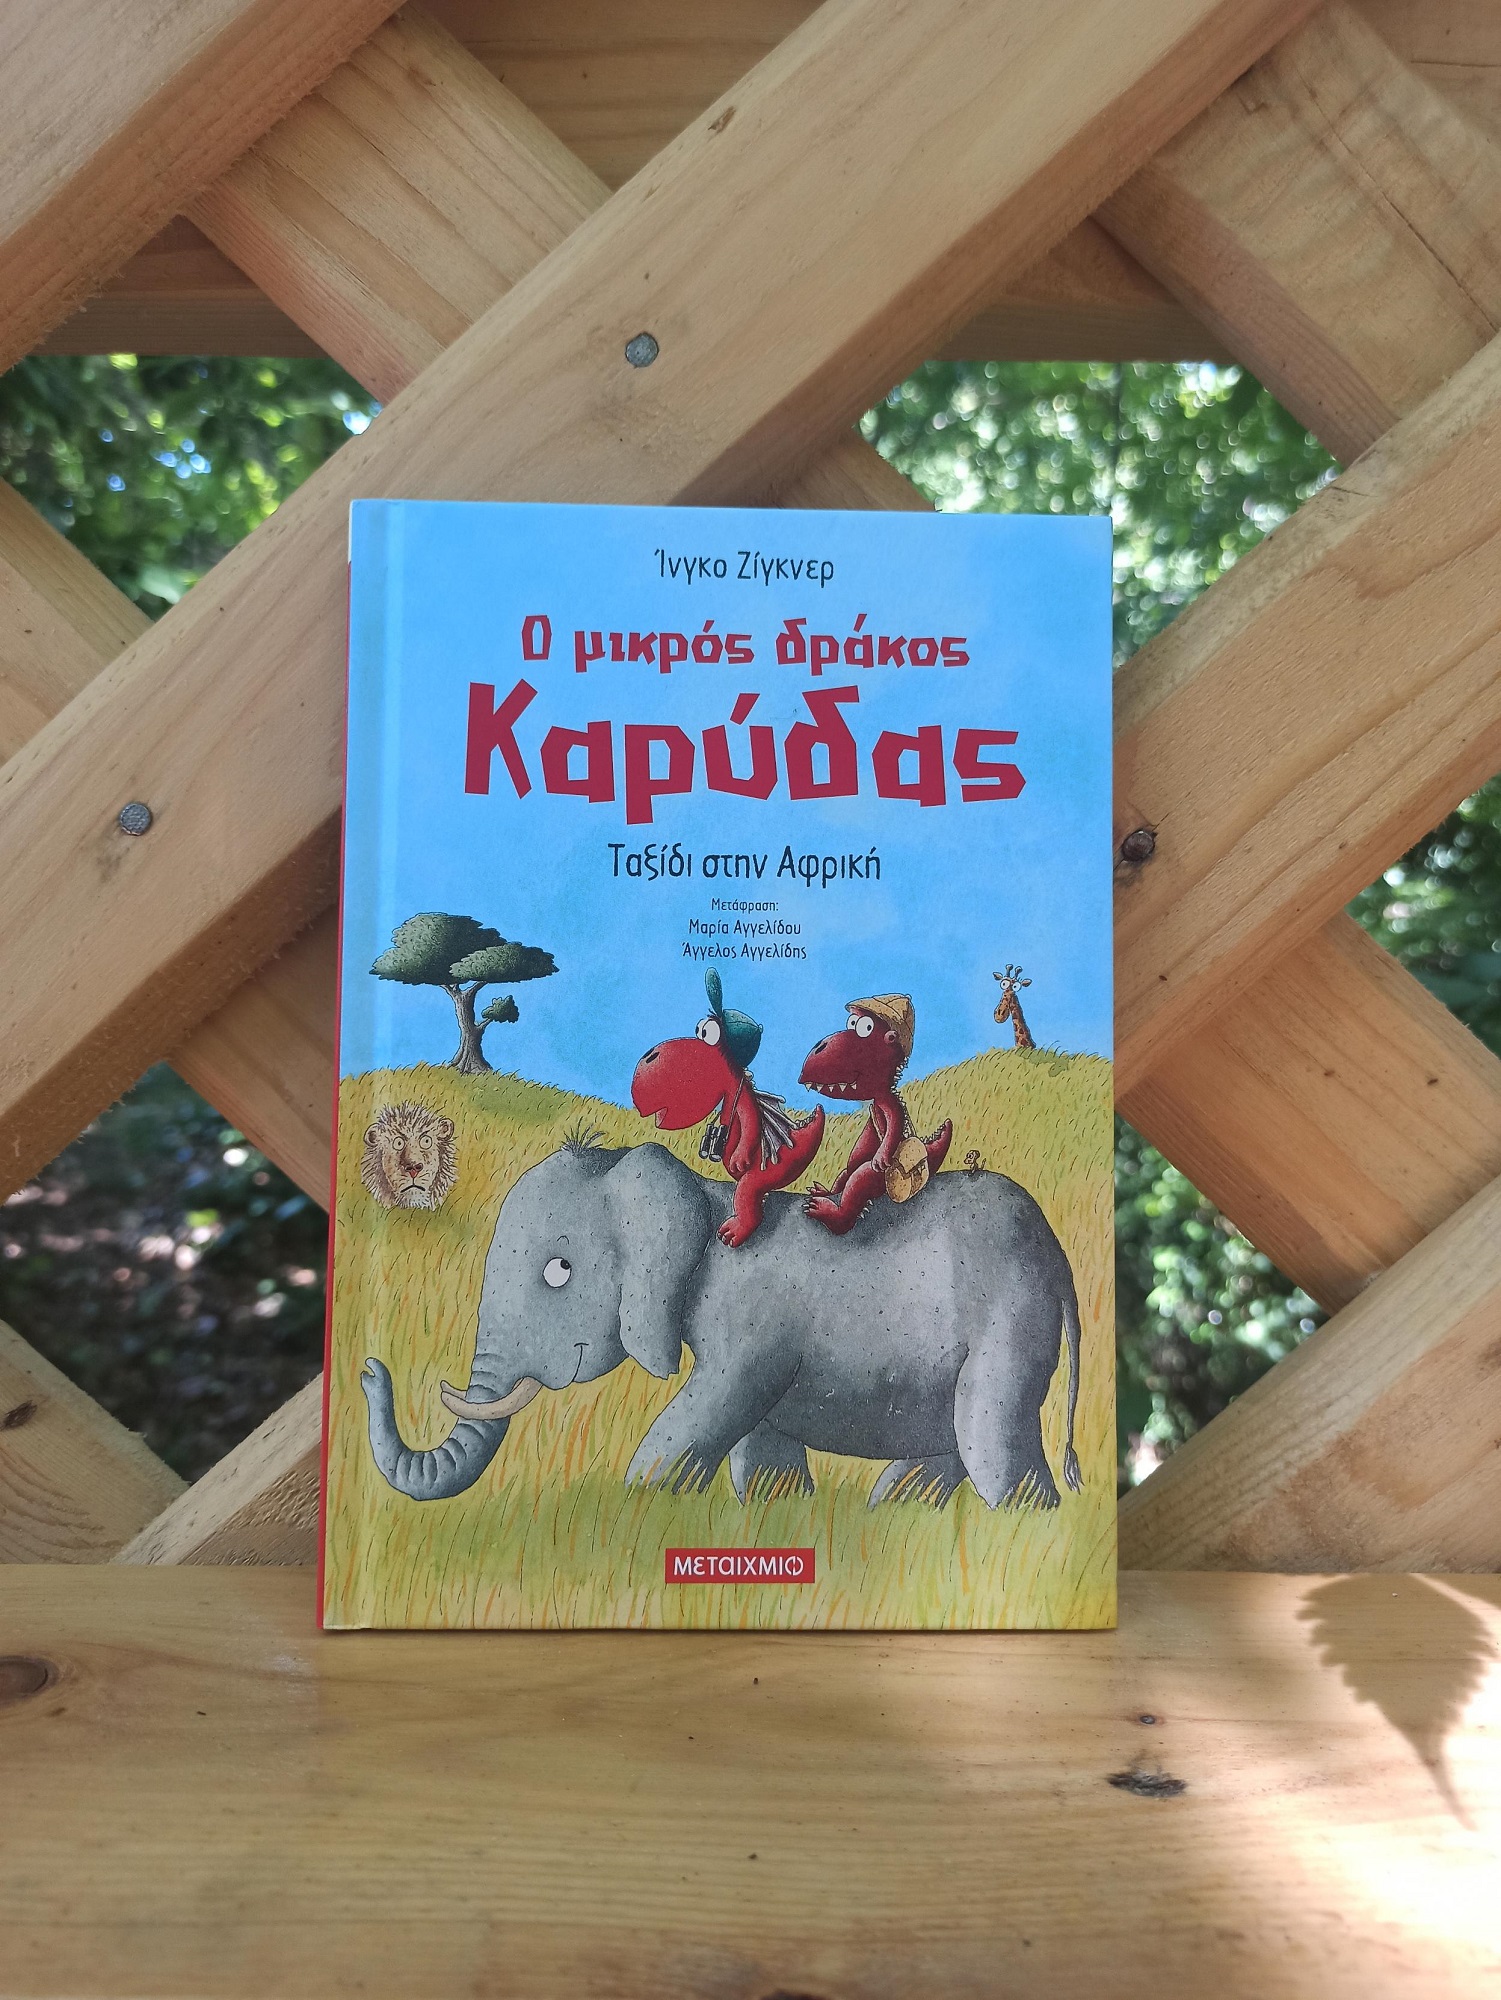 5 σειρές παιδικών βιβλίων με ήρωες που είναι σίγουρο ότι θα αγαπήσουν οι μικροί αναγνώστες